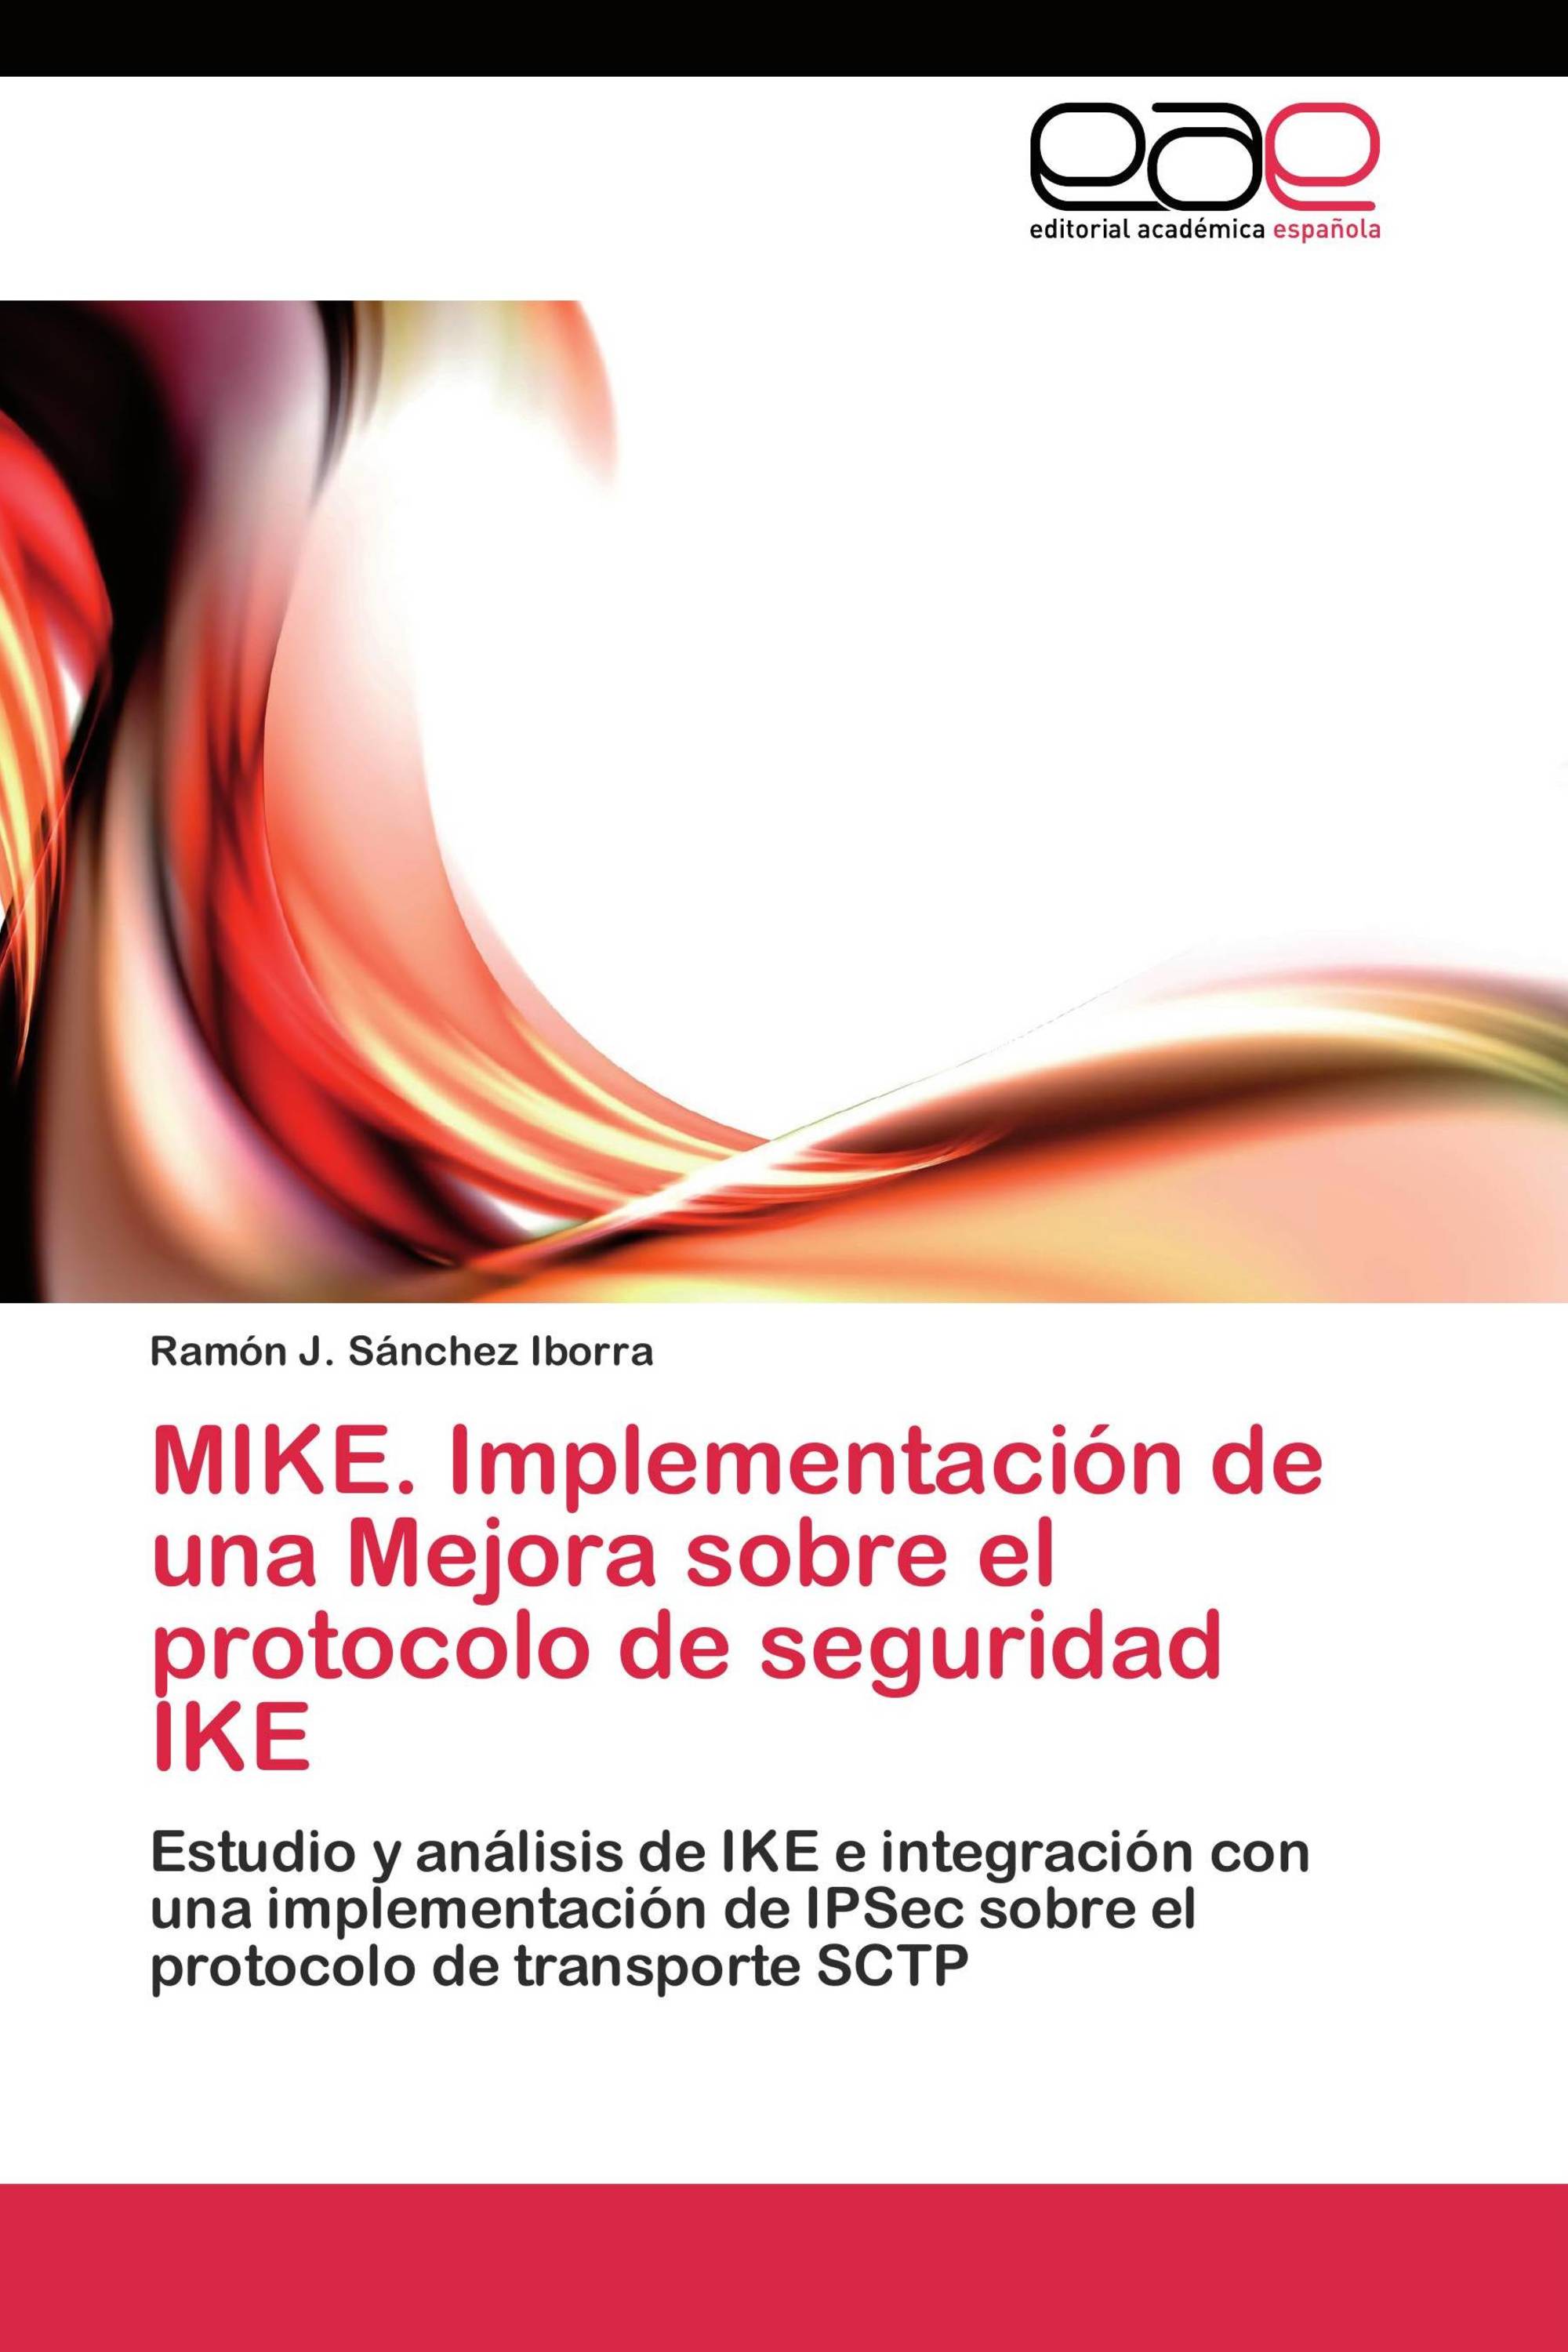 MIKE. Implementación de una Mejora sobre el protocolo de seguridad IKE